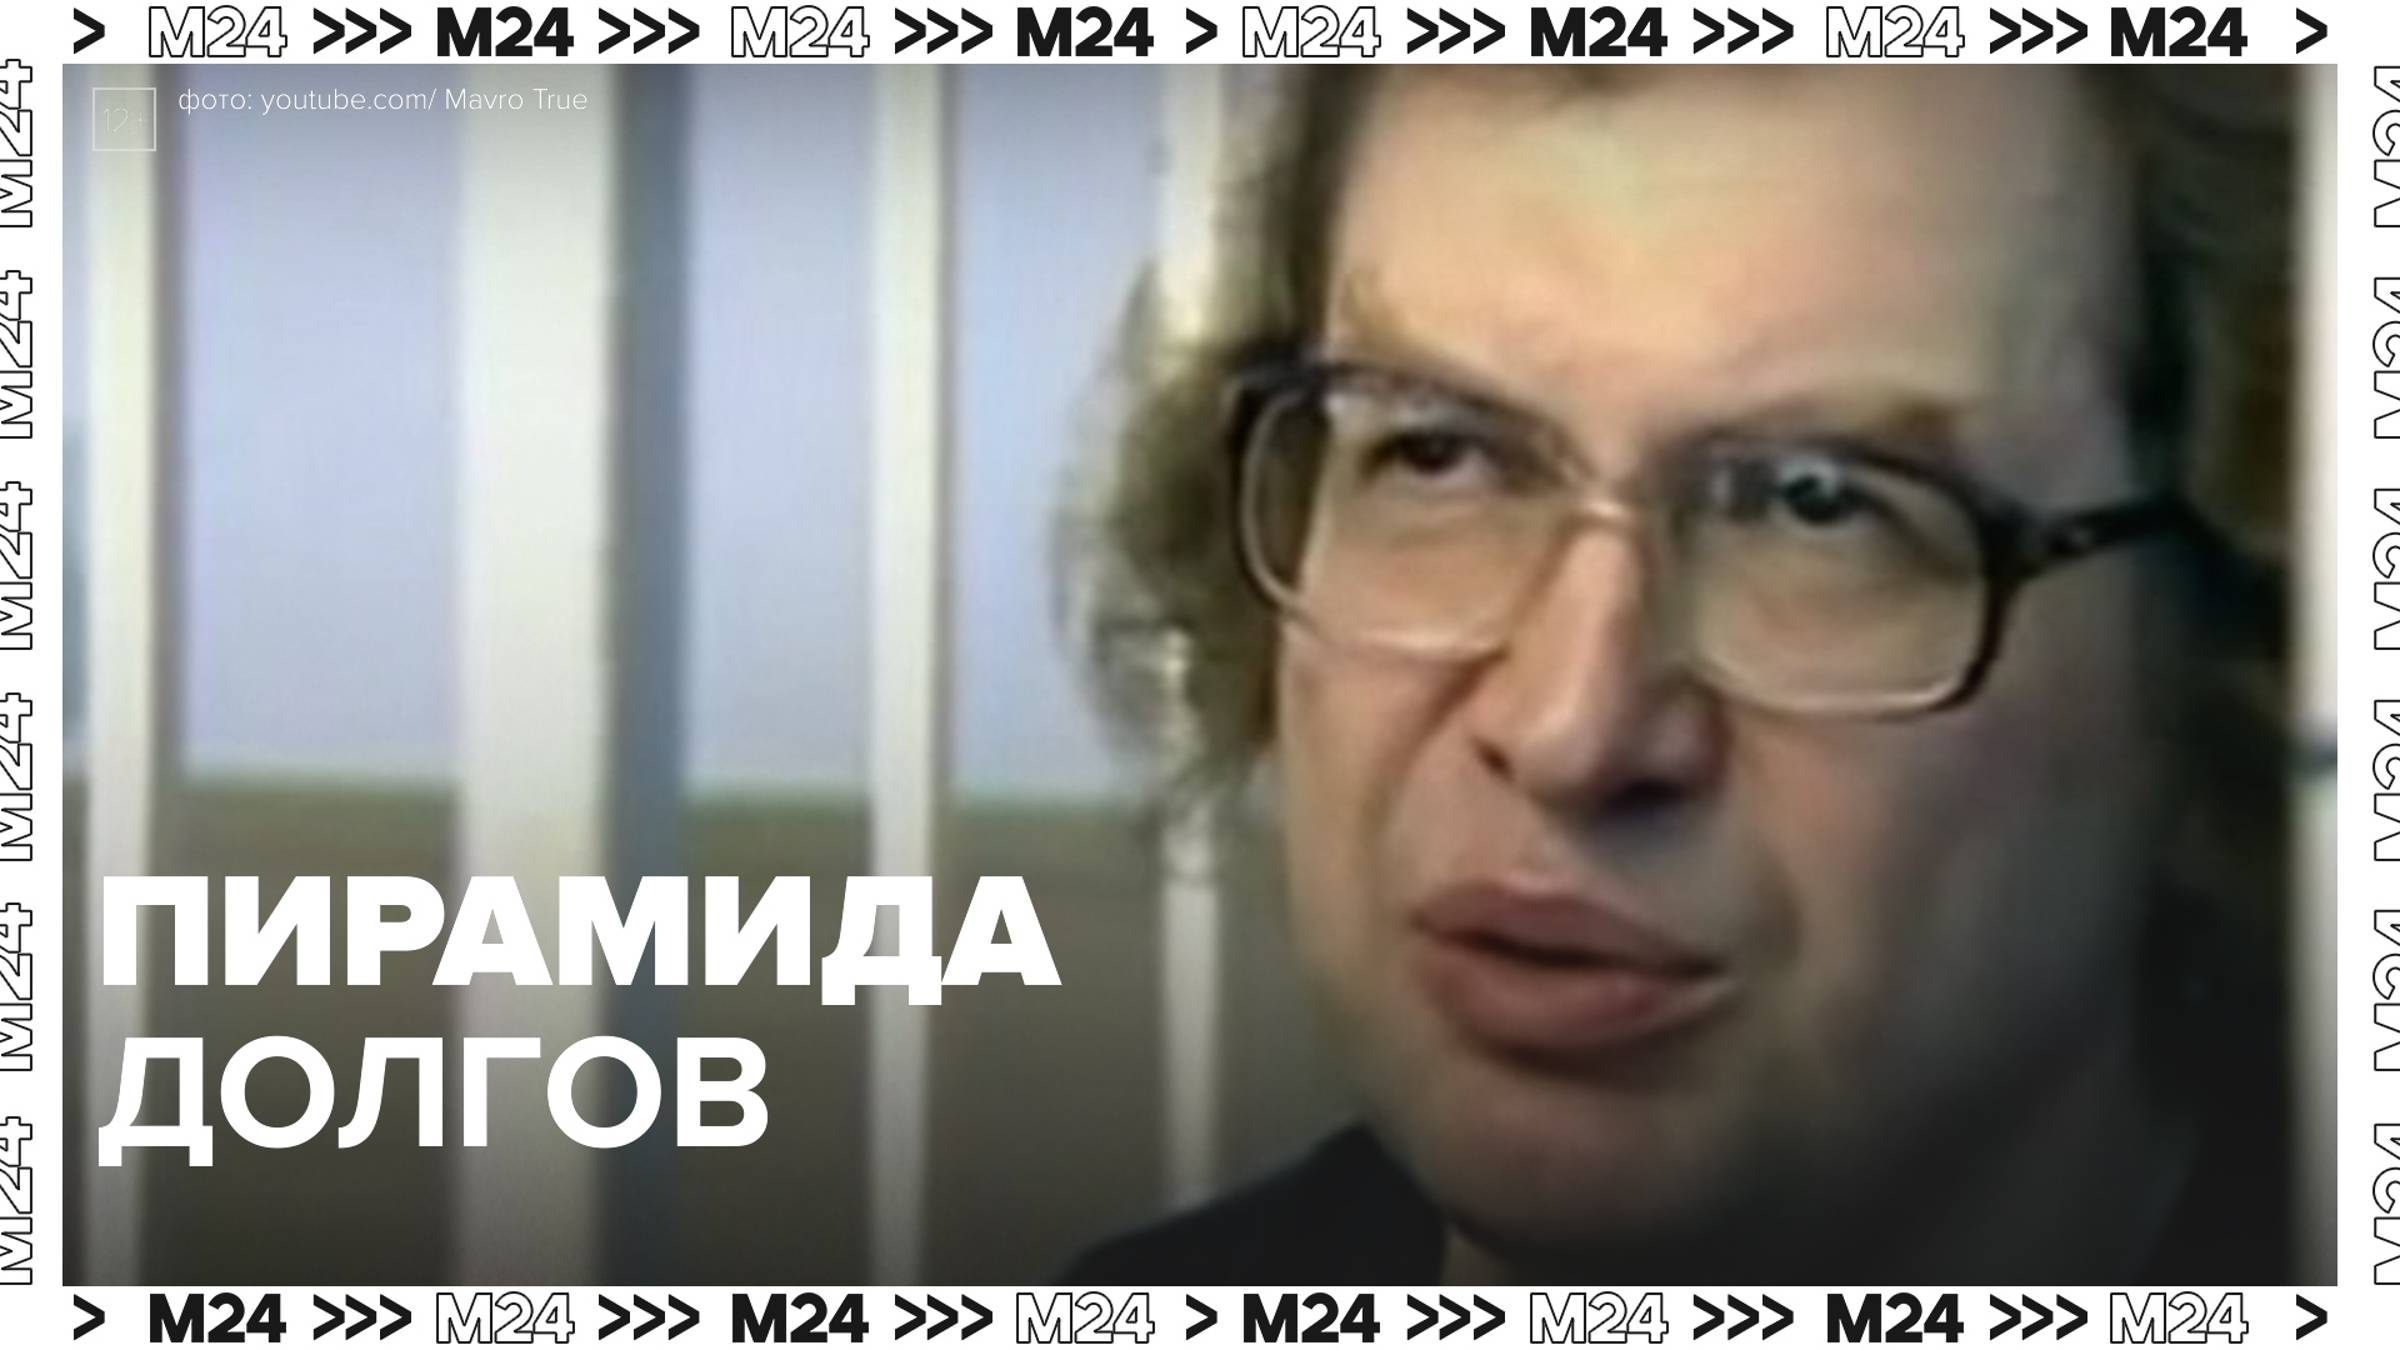 Основатель «МММ» после смерти остался должен 1,6 млрд рублей — Москва24|Контент